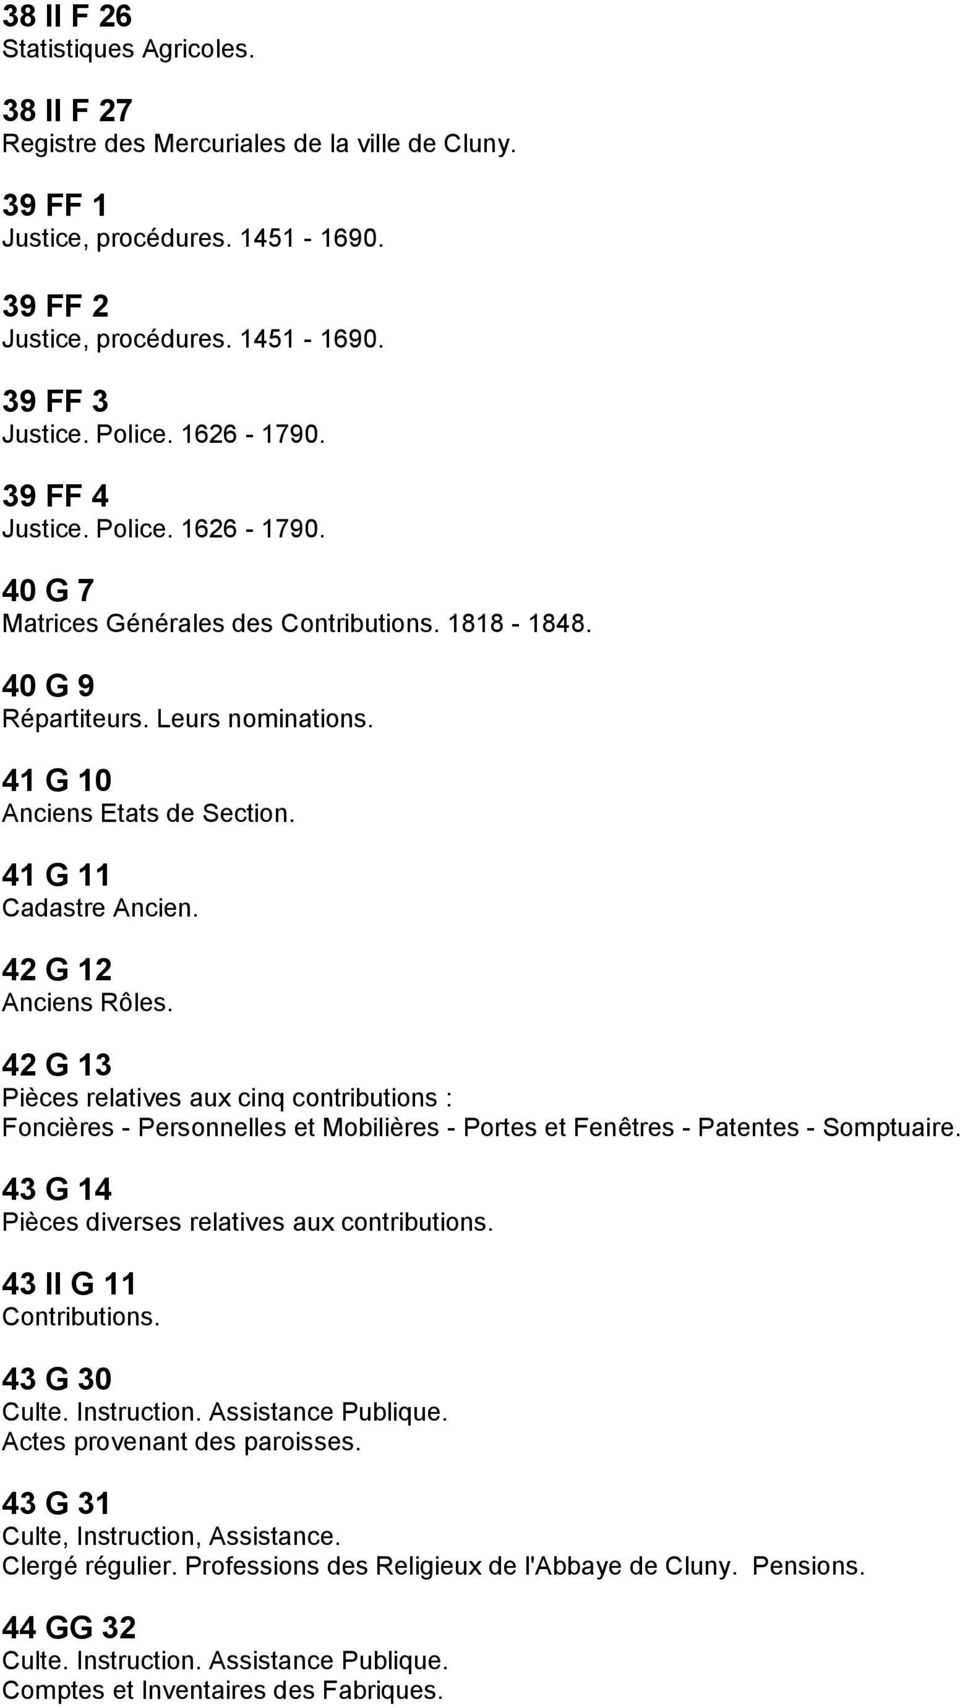 41 G 11 Cadastre Ancien. 42 G 12 Anciens Rôles. 42 G 13 Pièces relatives aux cinq contributions : Foncières - Personnelles et Mobilières - Portes et Fenêtres - Patentes - Somptuaire.